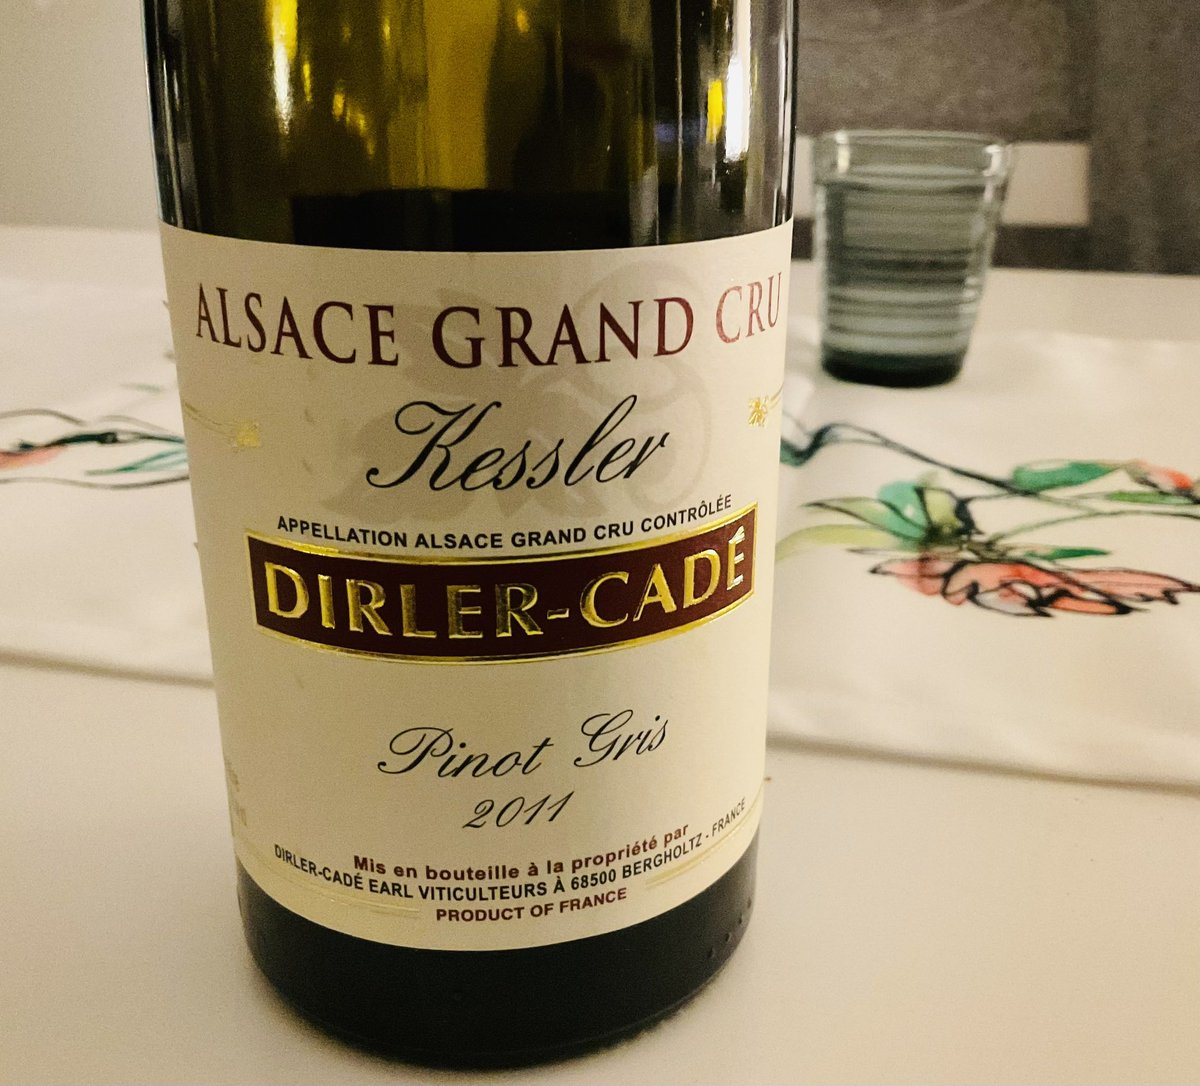 Jos sinulla on hieman yli-ikäistä Pinot Gritä, niin uunioma-kaneli mascarpone-kermalla istui tälle erinomaisesti.
#pinotgris #dirlercade